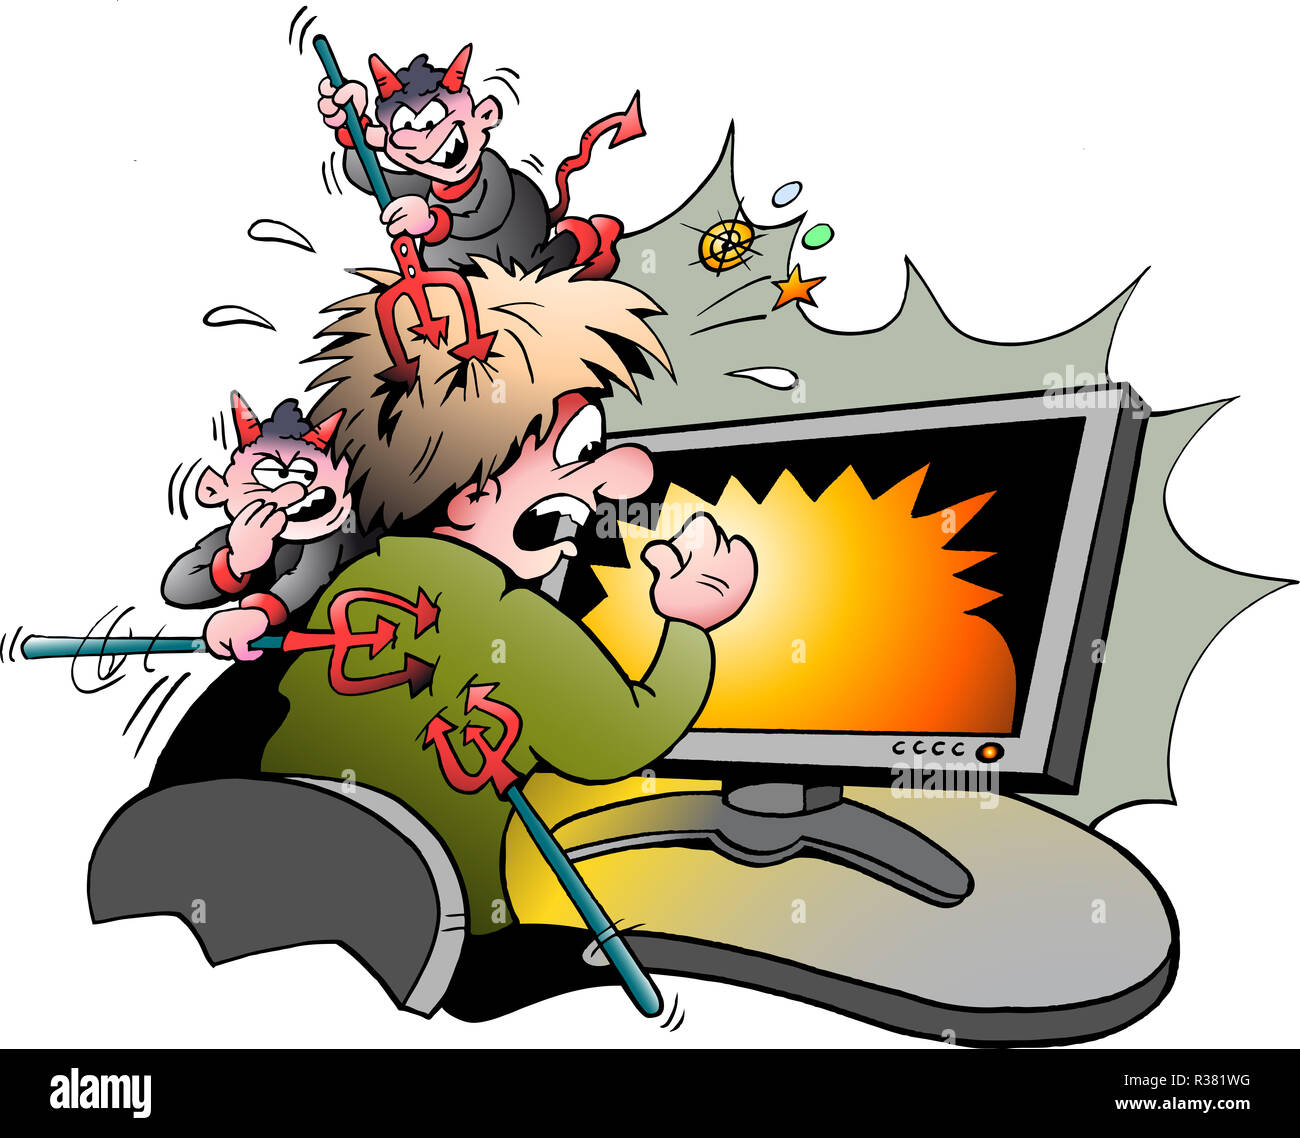 Vektor Cartoon Illustration Eines Computer Surfer Durch Gefahrliche Viren Bekampft Wird Stockfotografie Alamy